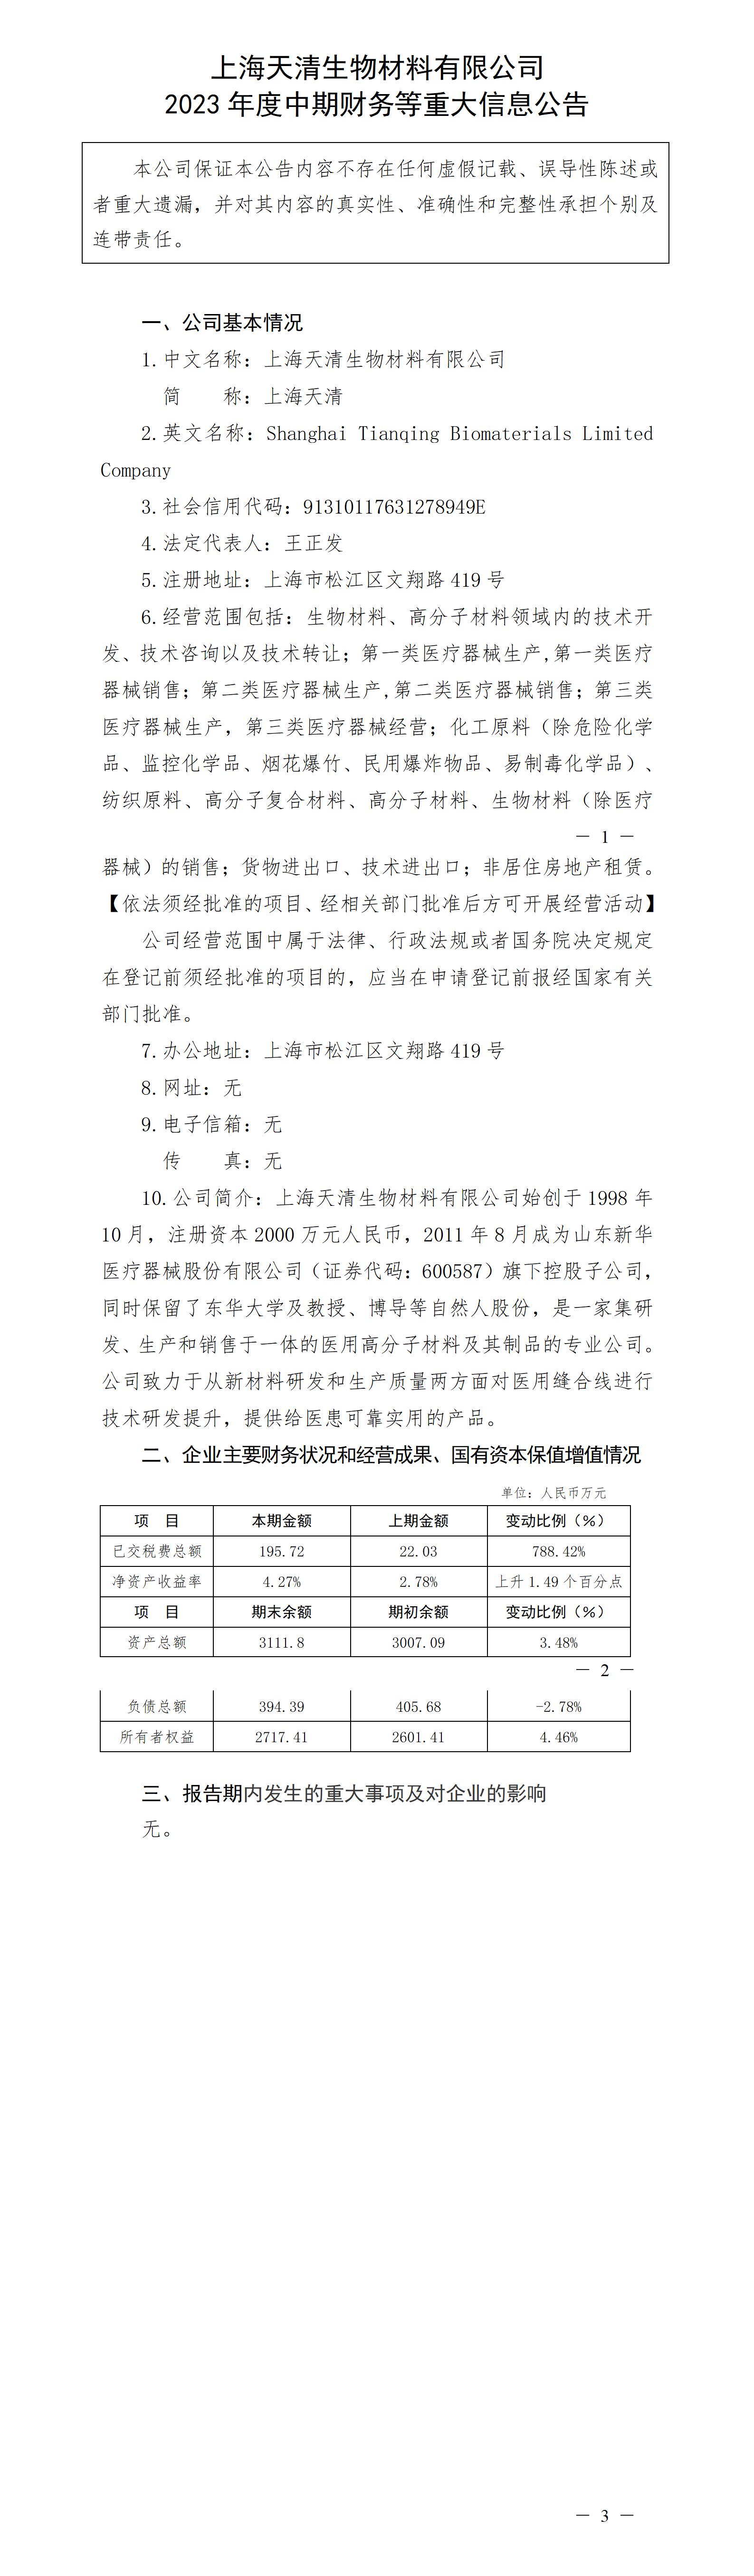 上海天清生物材料有限公司2023年度中期財務等重大信息公告_01.jpg